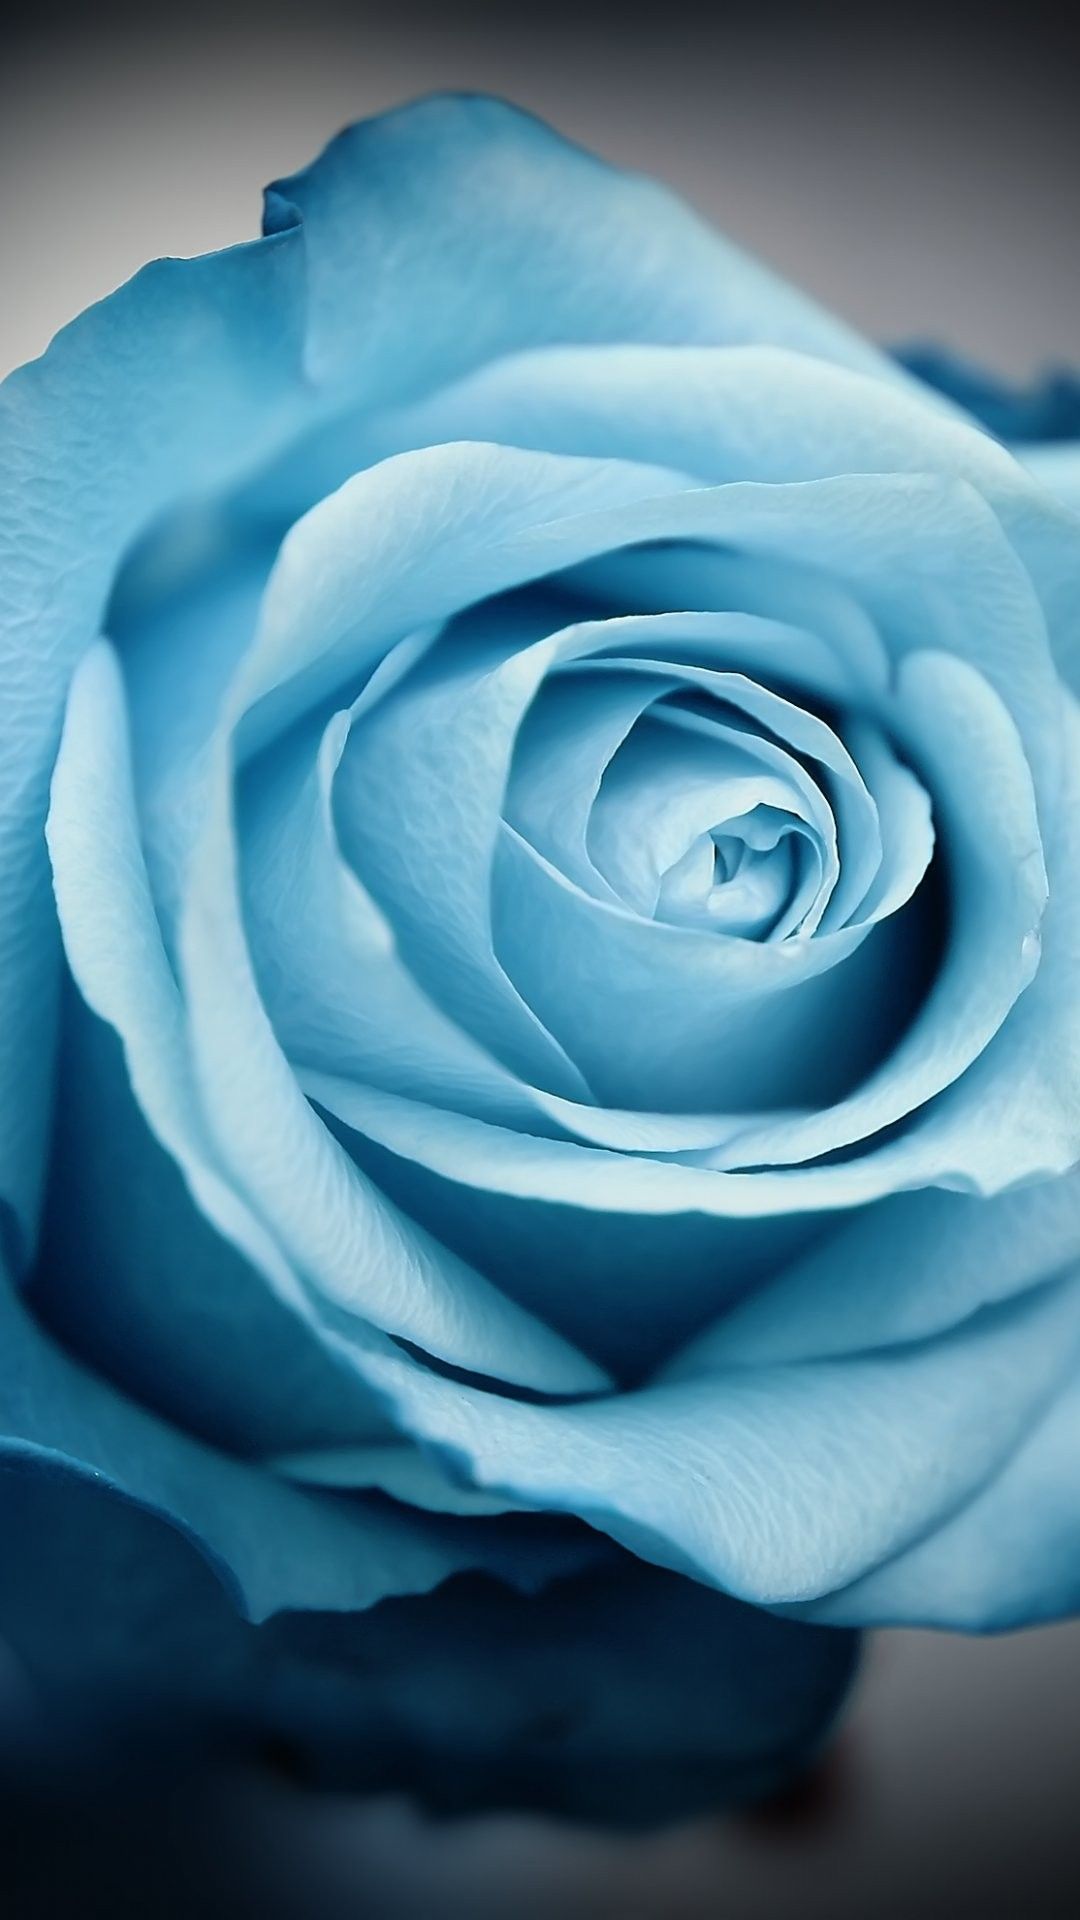 iphone 6用のかわいい壁紙,ローズ,青い,花,庭のバラ,花弁